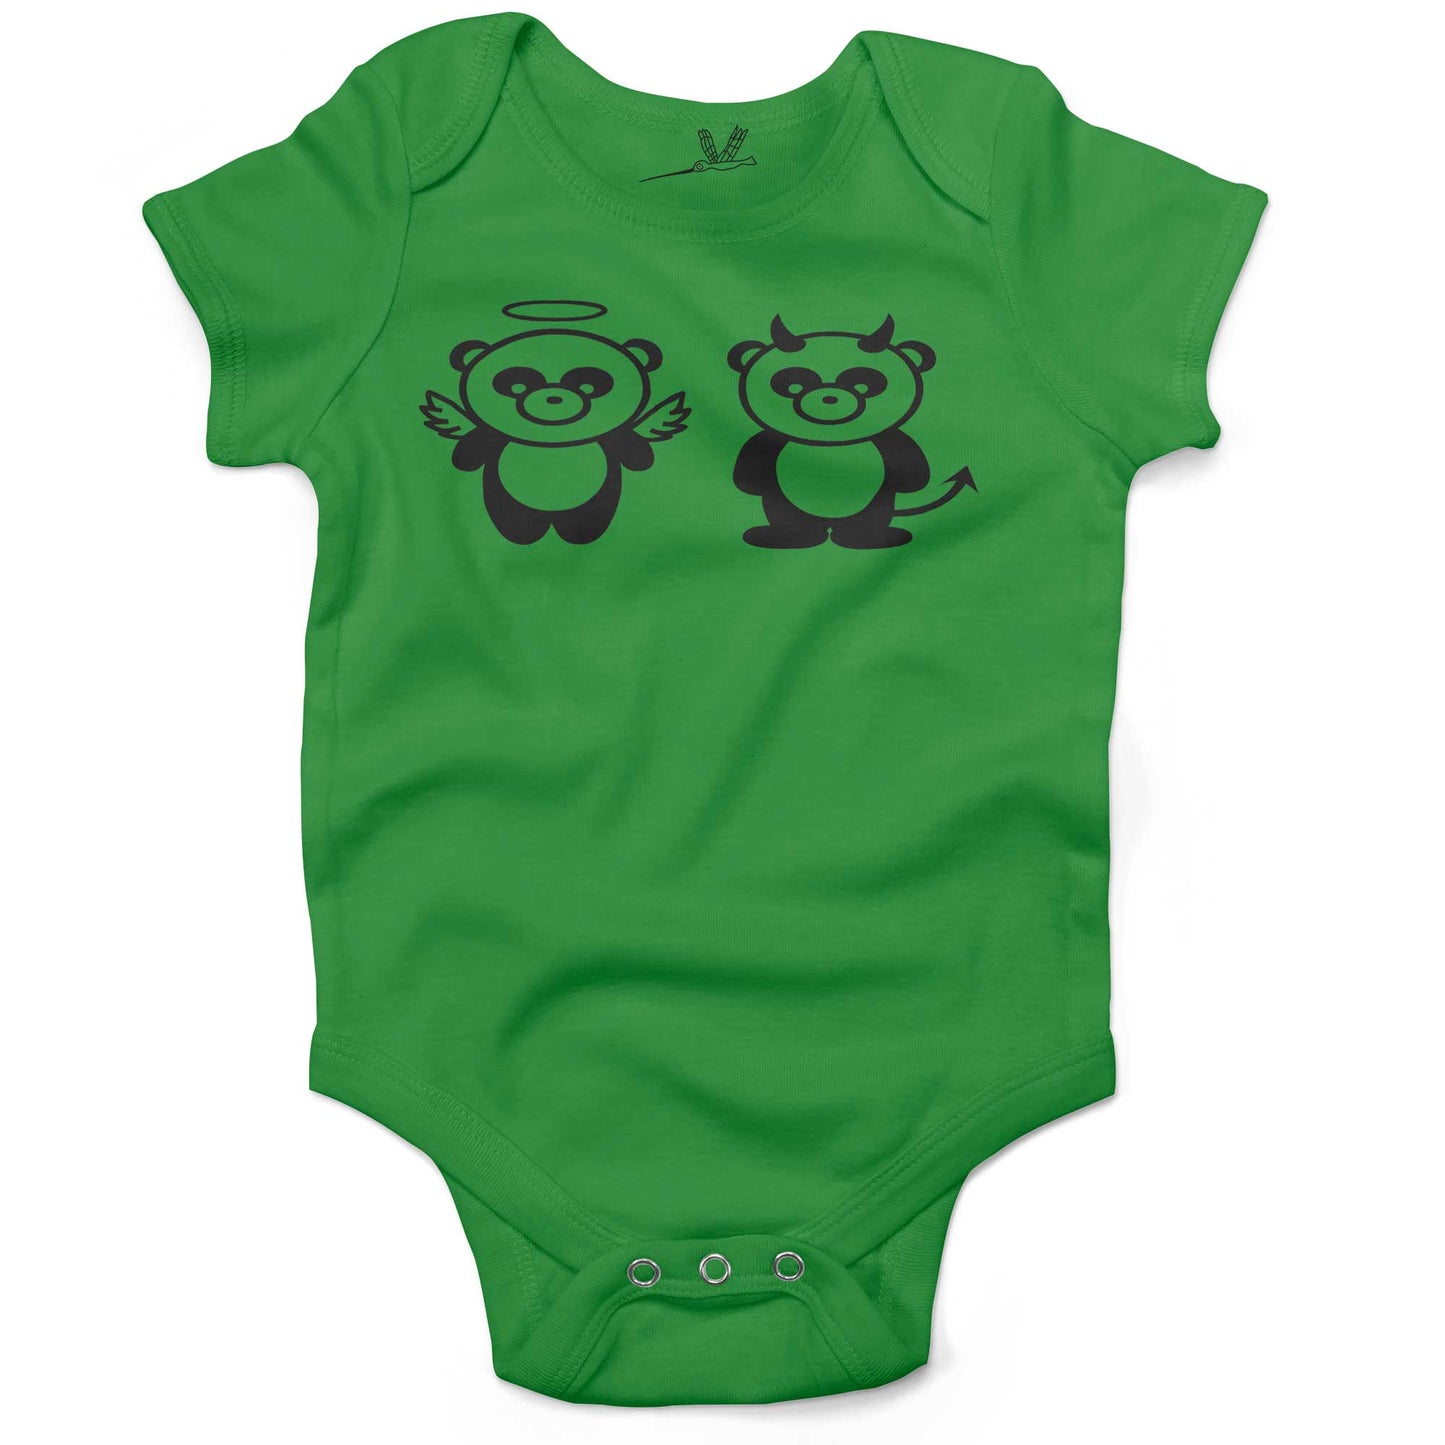 Good Panda, Bad Panda Infant Bodysuit or Raglan Tee-Grass Green-3-6 months